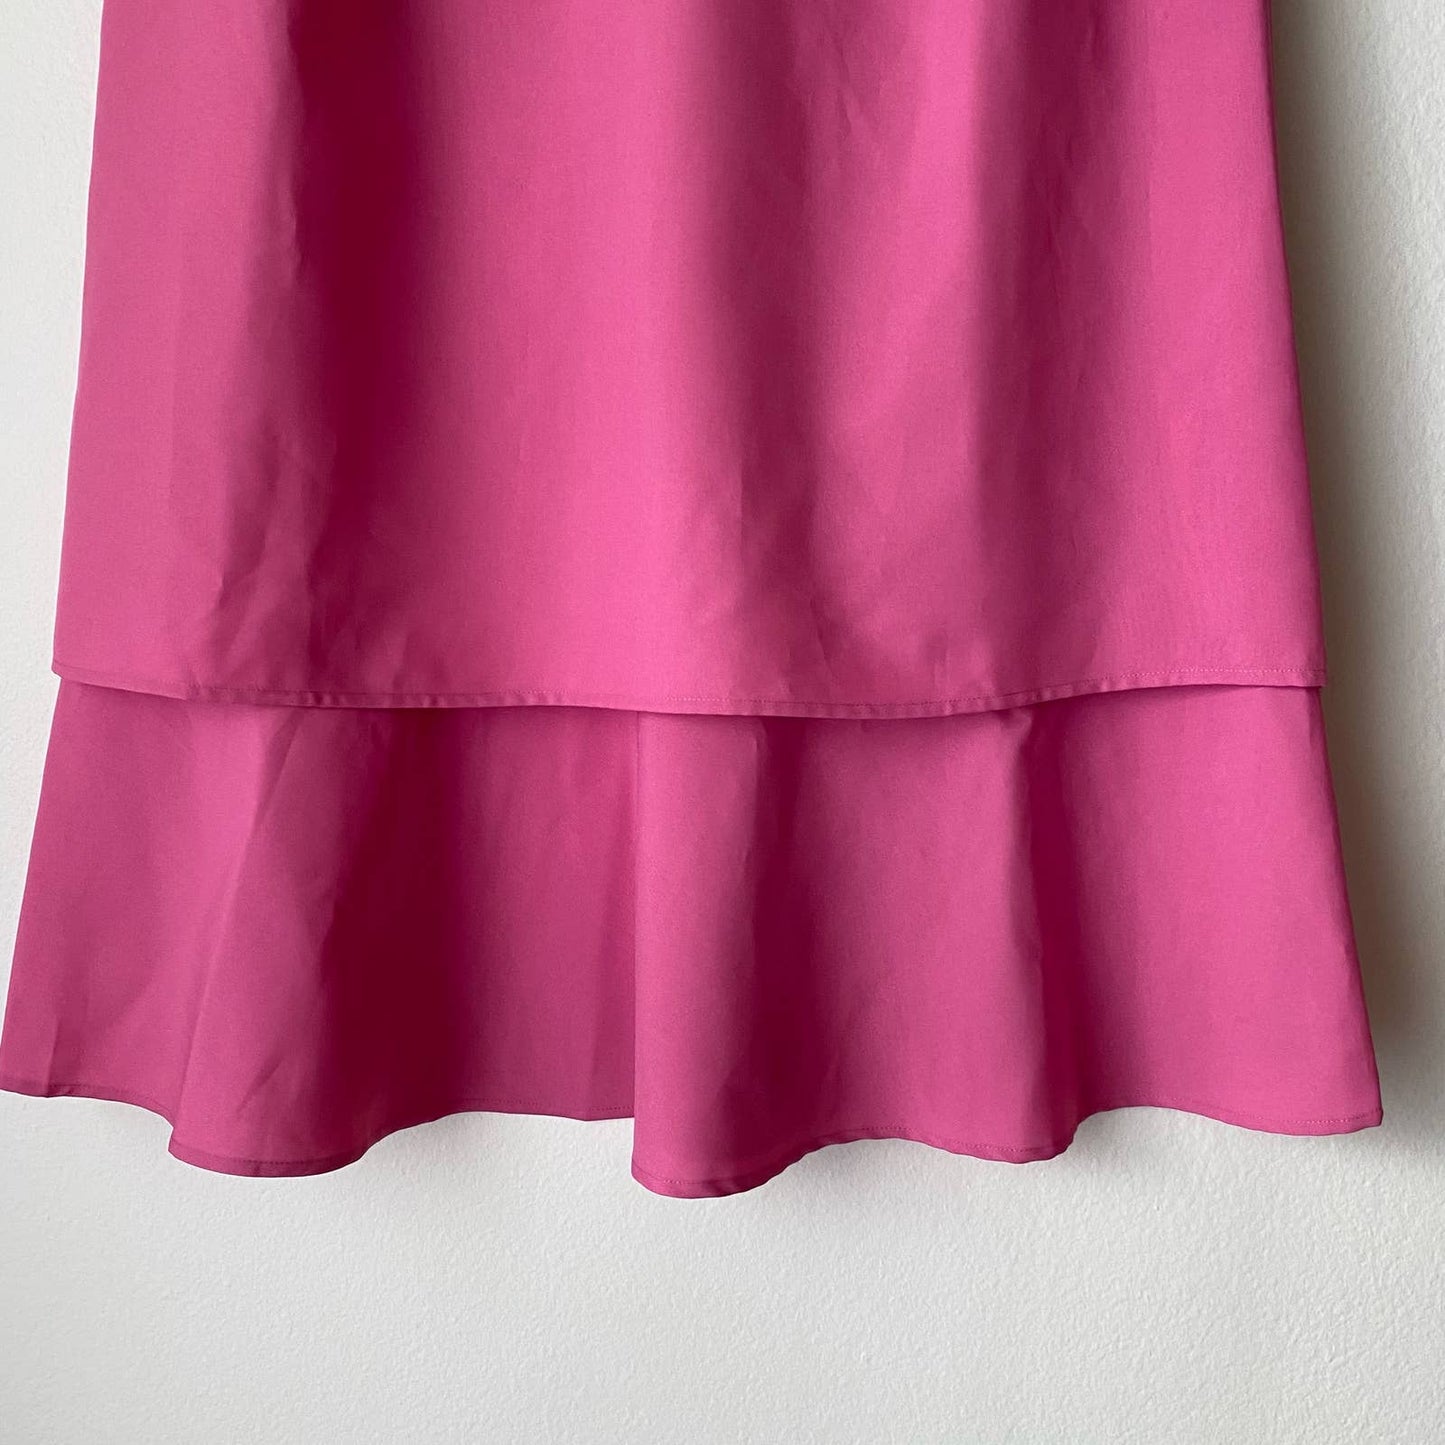 Allison Wood sz 14W pink 2pc dress blazer set NWT